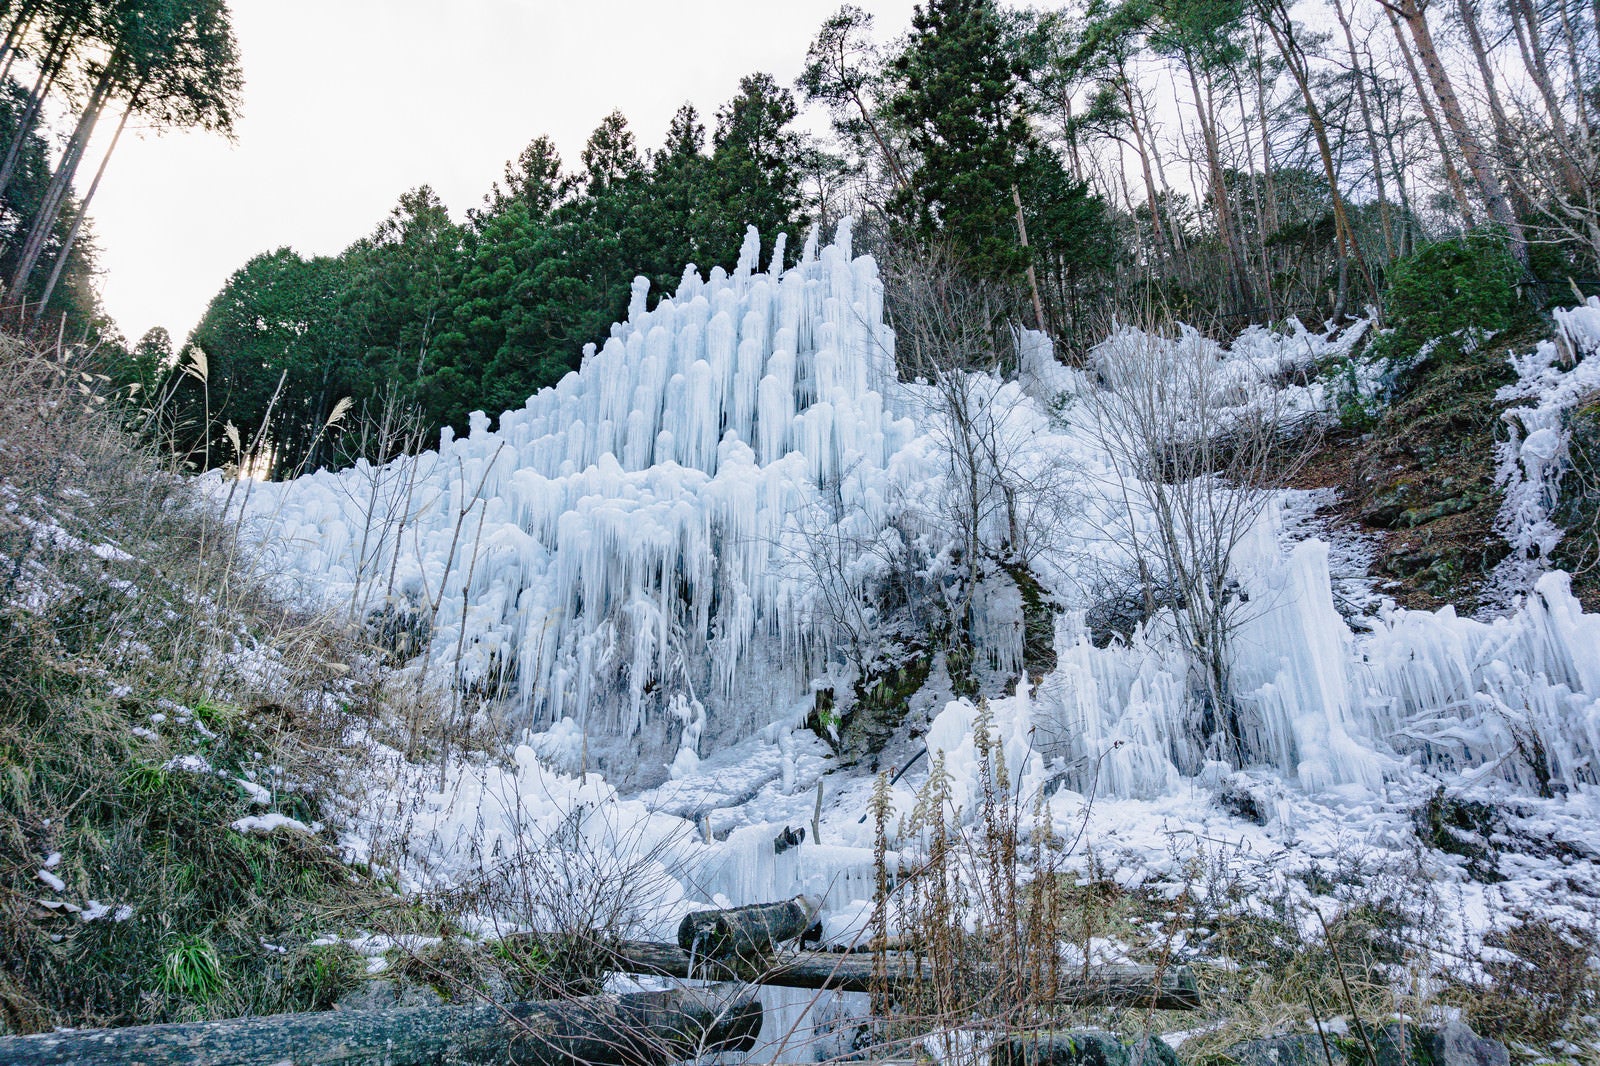 「組み上げられた丸太に水をかけて作られた湧水公園の氷瀑」の写真